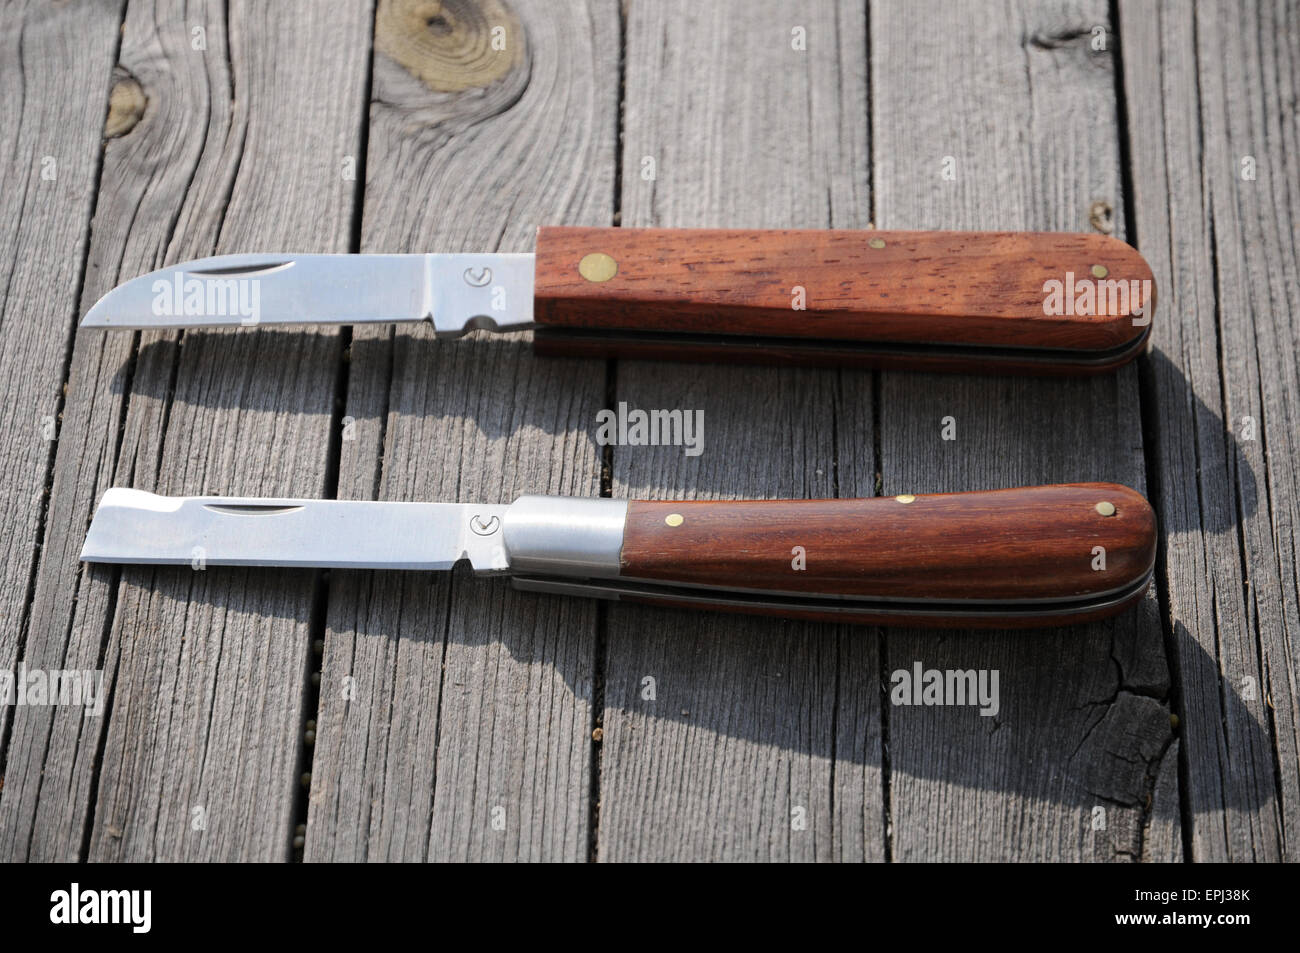 Grafting knives Stock Photo